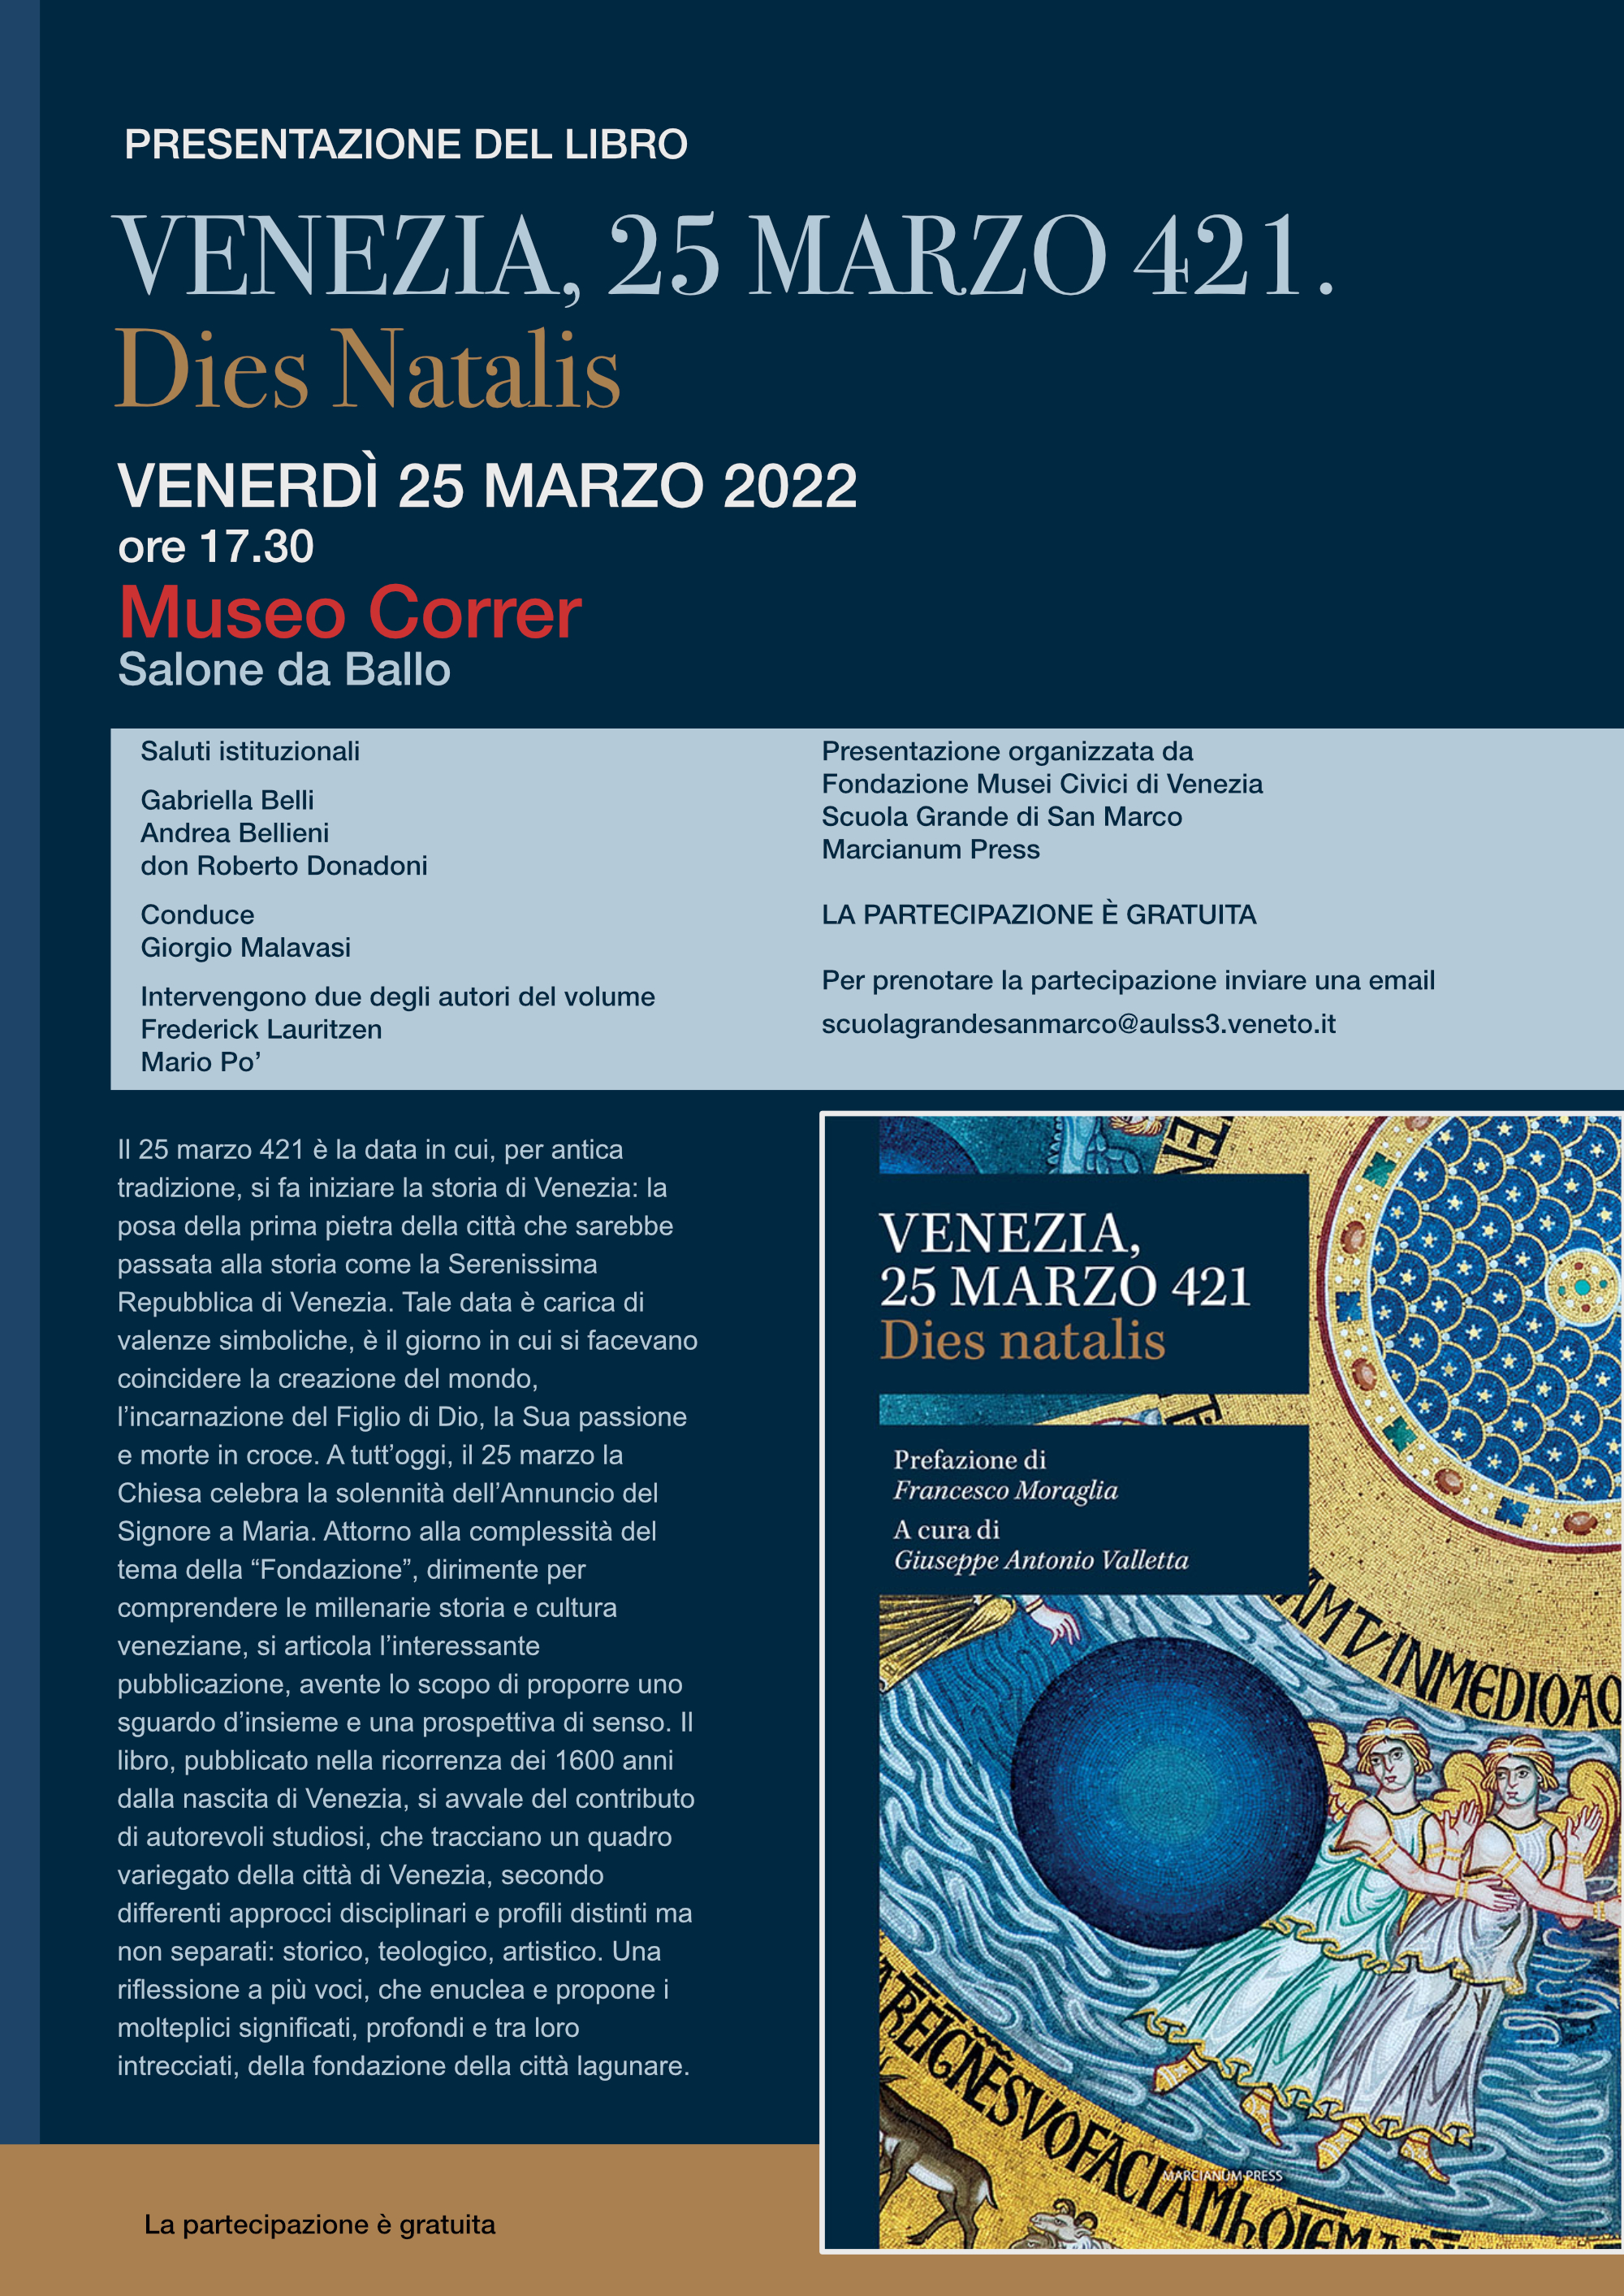 Presentazione del libro “Venezia, 25 marzo 421. Dies Natalis”